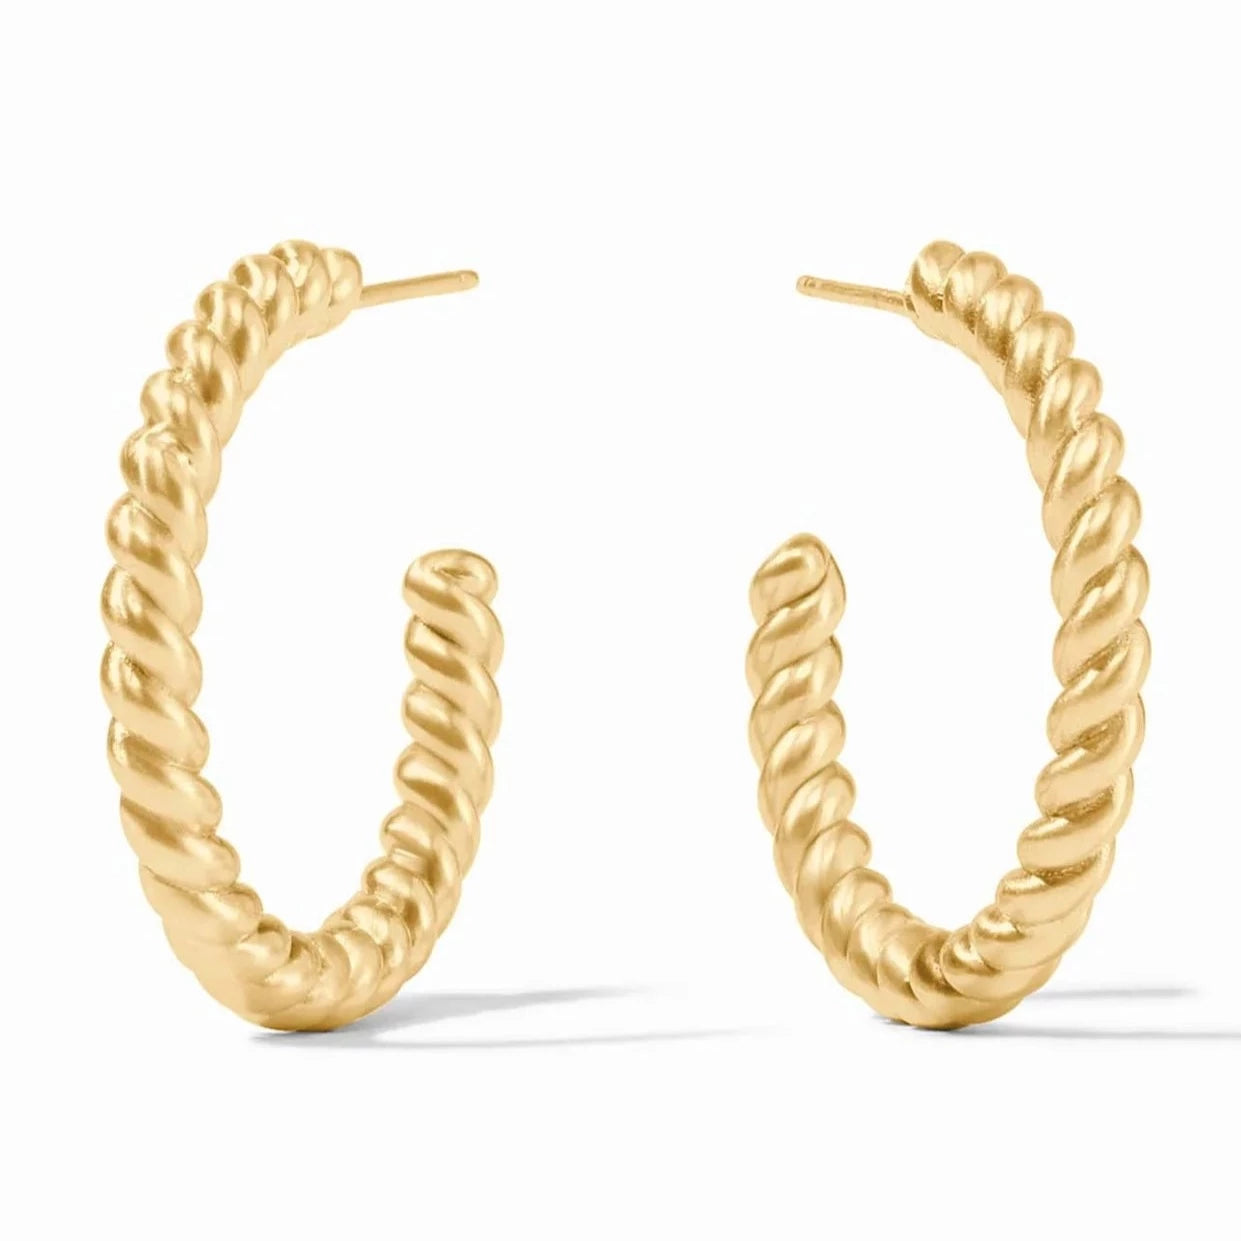 Julie Vos 24K Gold Plated Nassau Hoop Earrings, Medium